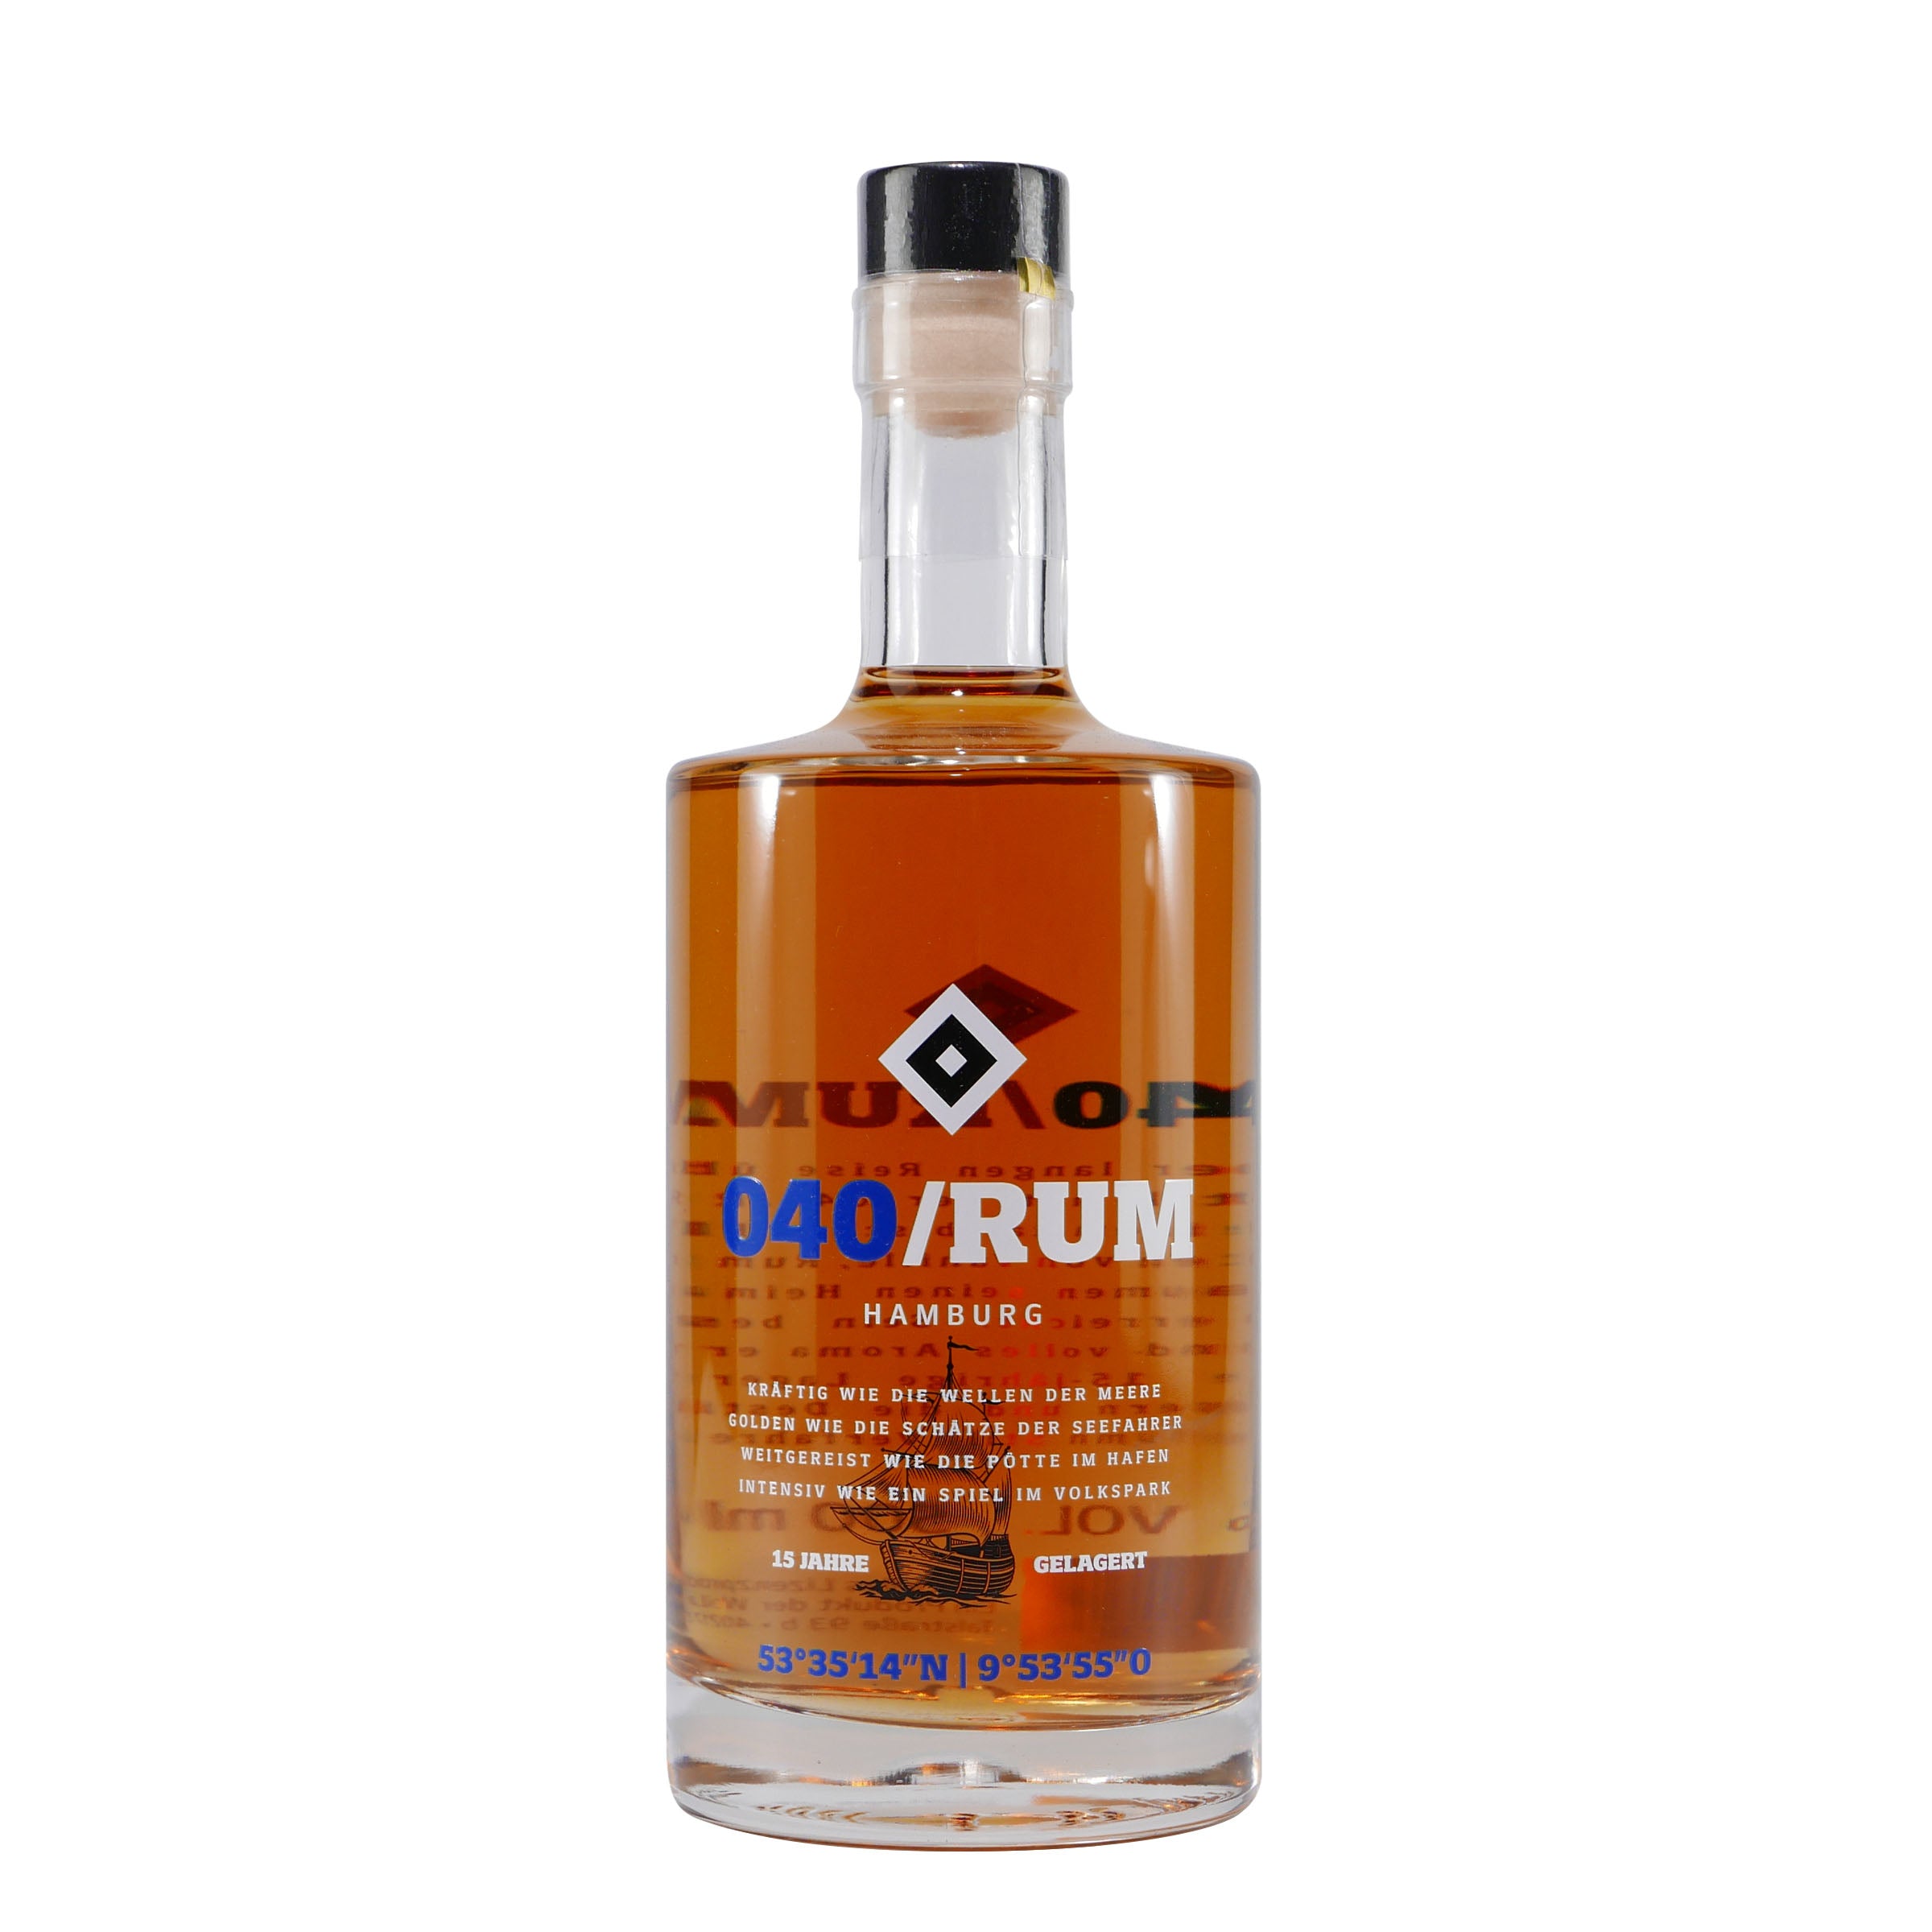 HSV 040 Rum